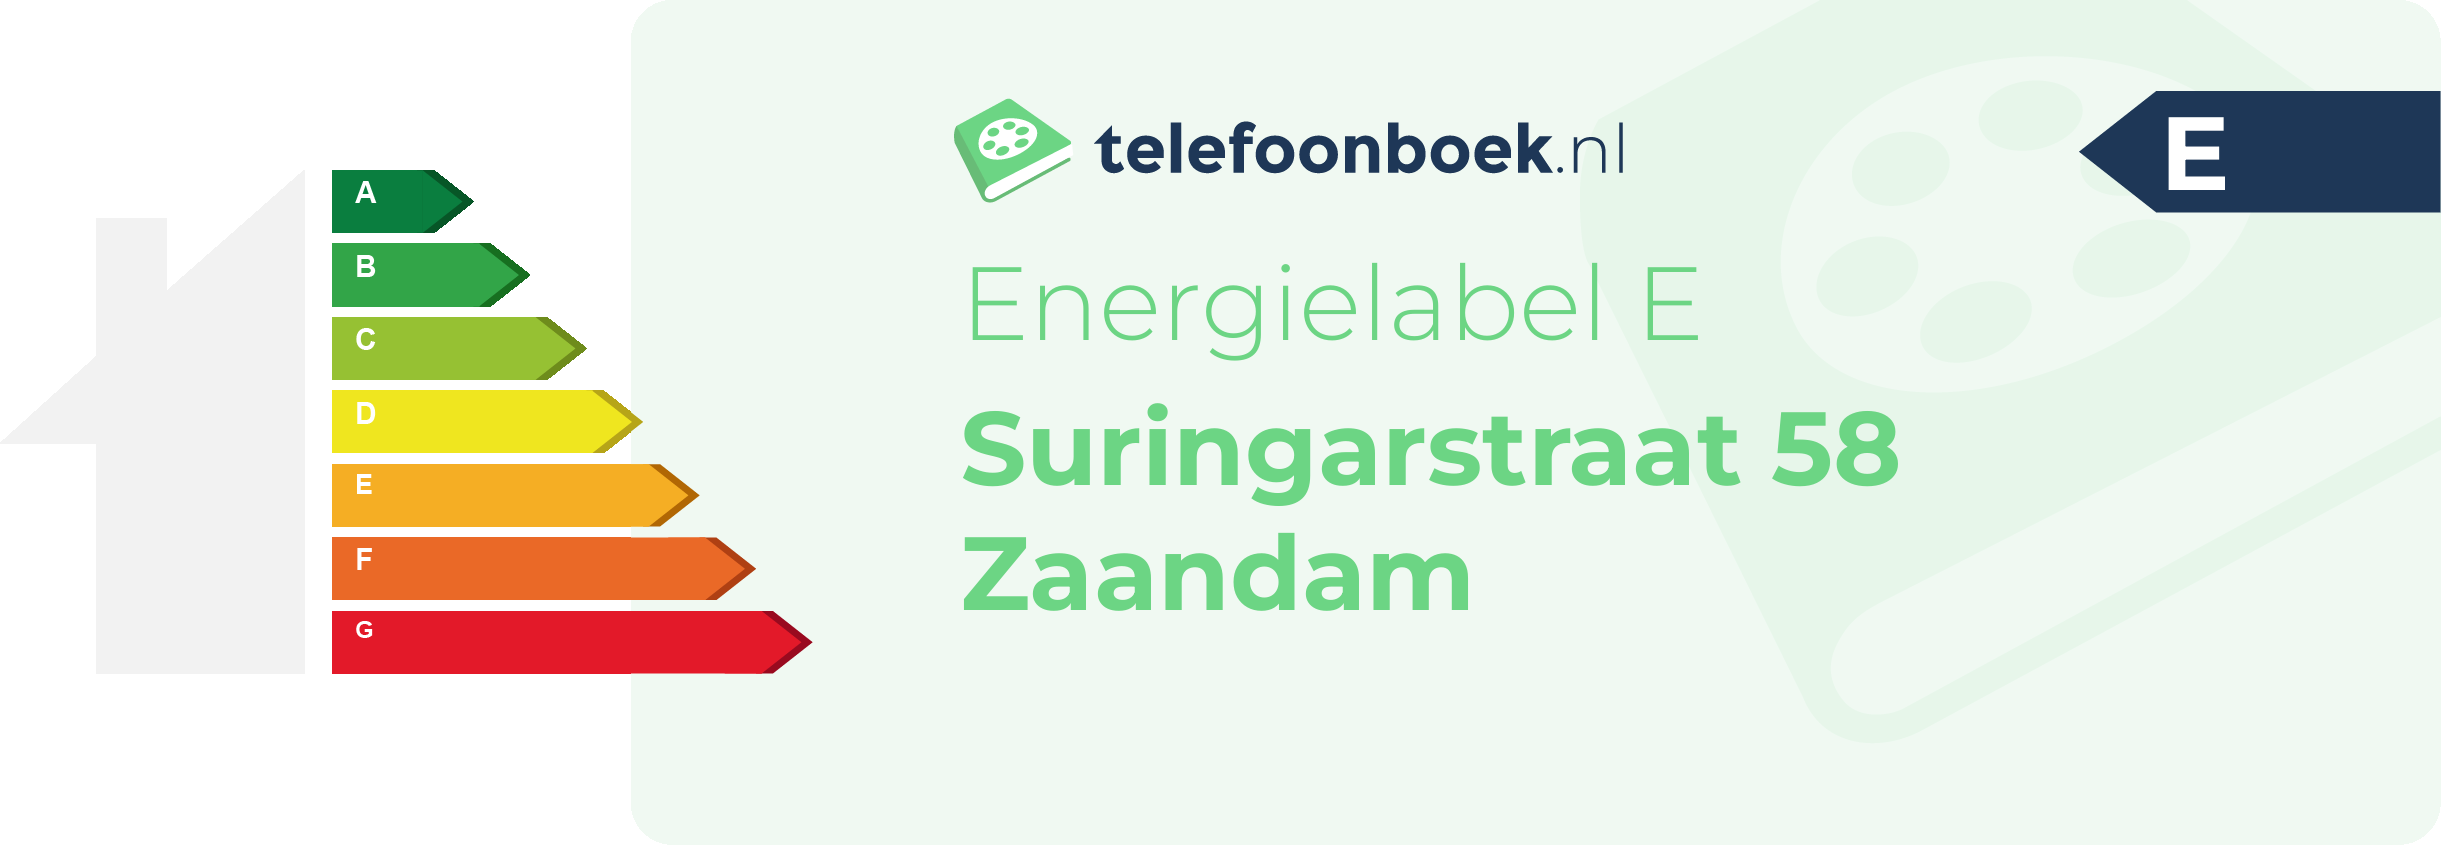 Energielabel Suringarstraat 58 Zaandam